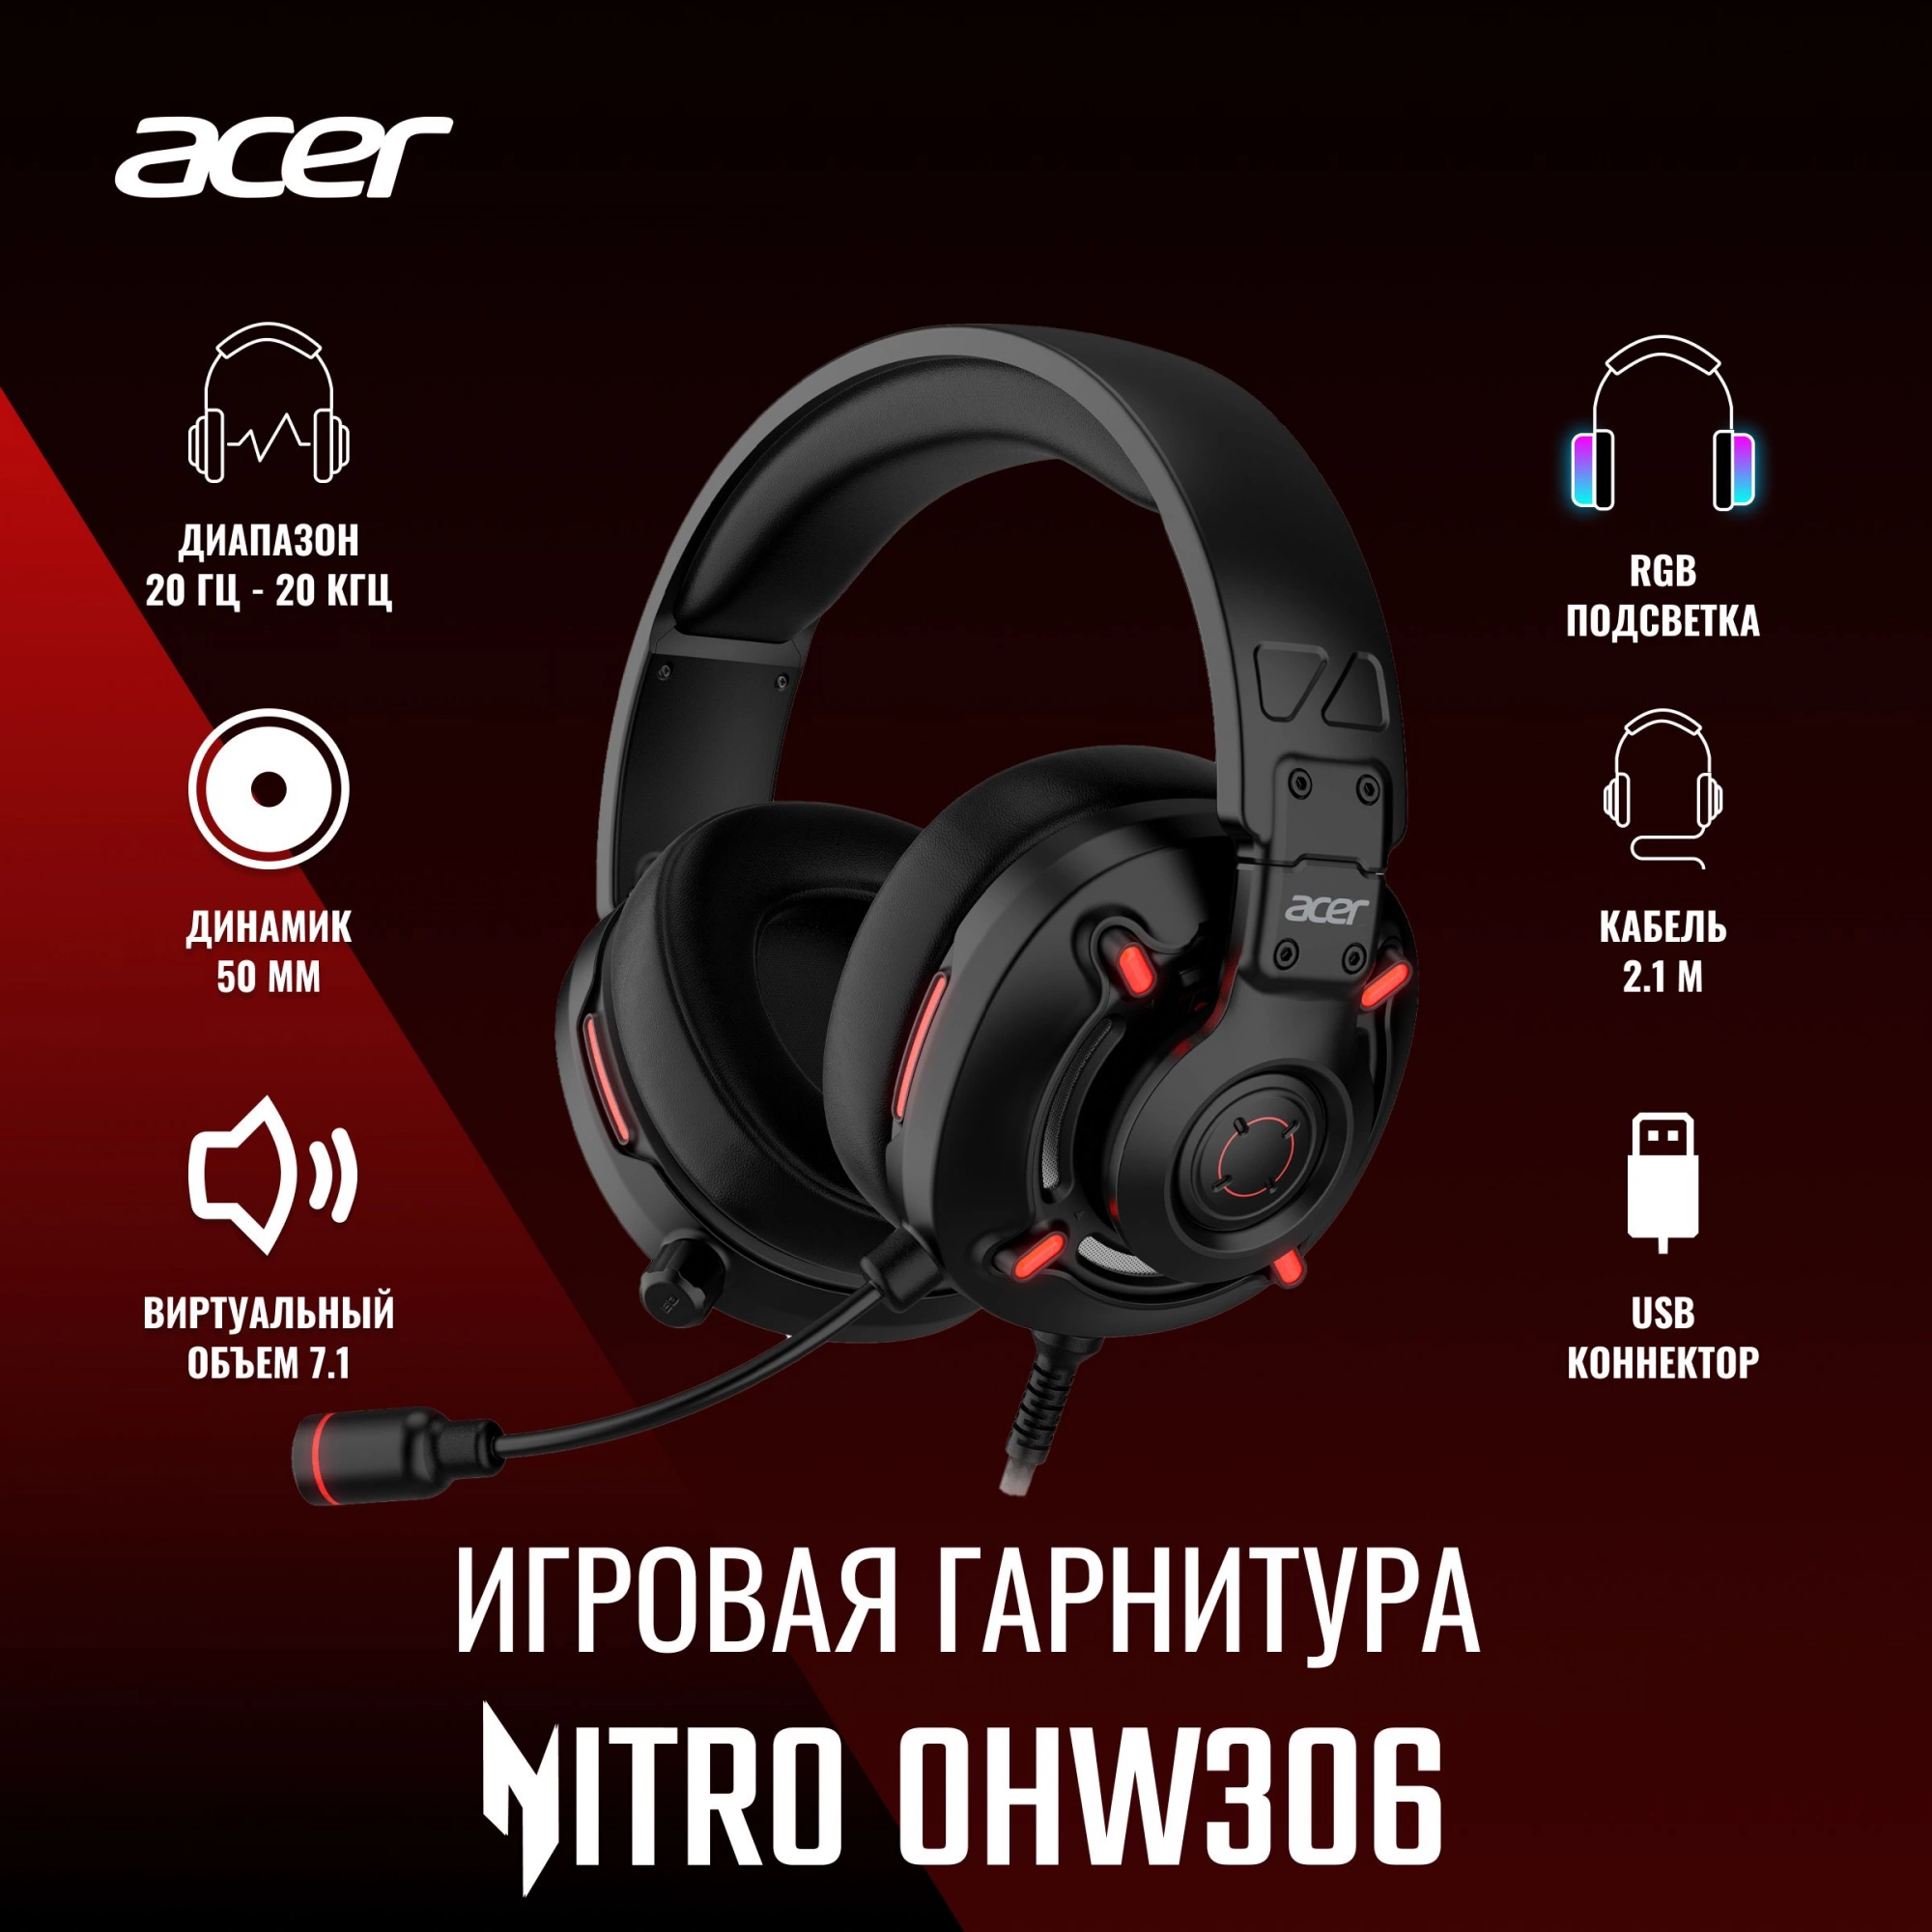 Гарнитура игровая Acer Nitro OHW306 черный (zl. hdsee.00e)